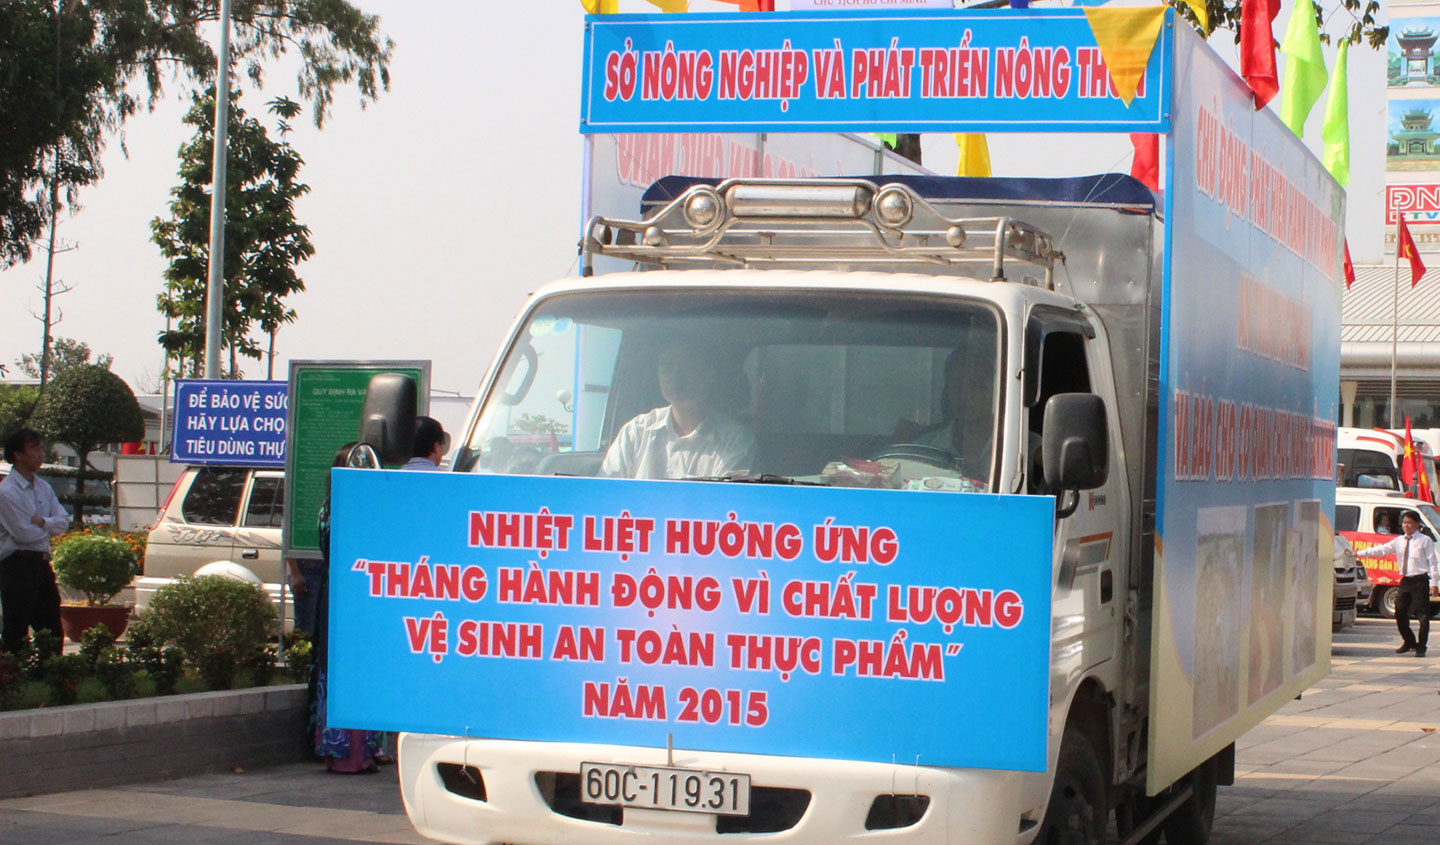  Đoàn xe diễu hành tuyên truyền Tháng hành động vì chất lượng vệ sinh an toàn thực phẩm.